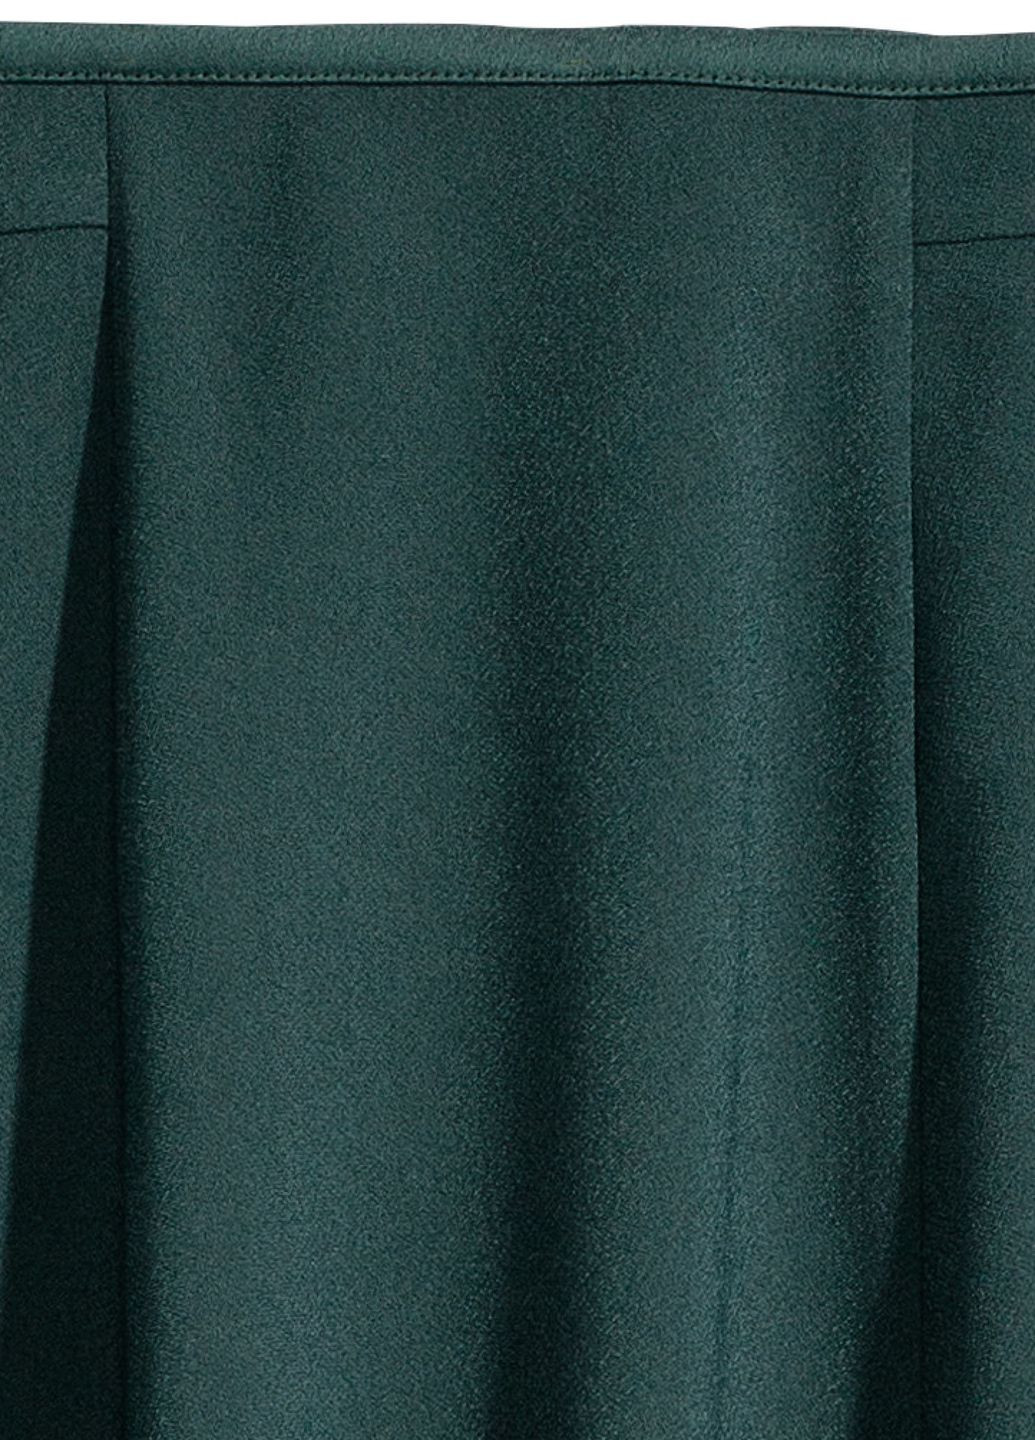 Зеленая юбка H&M